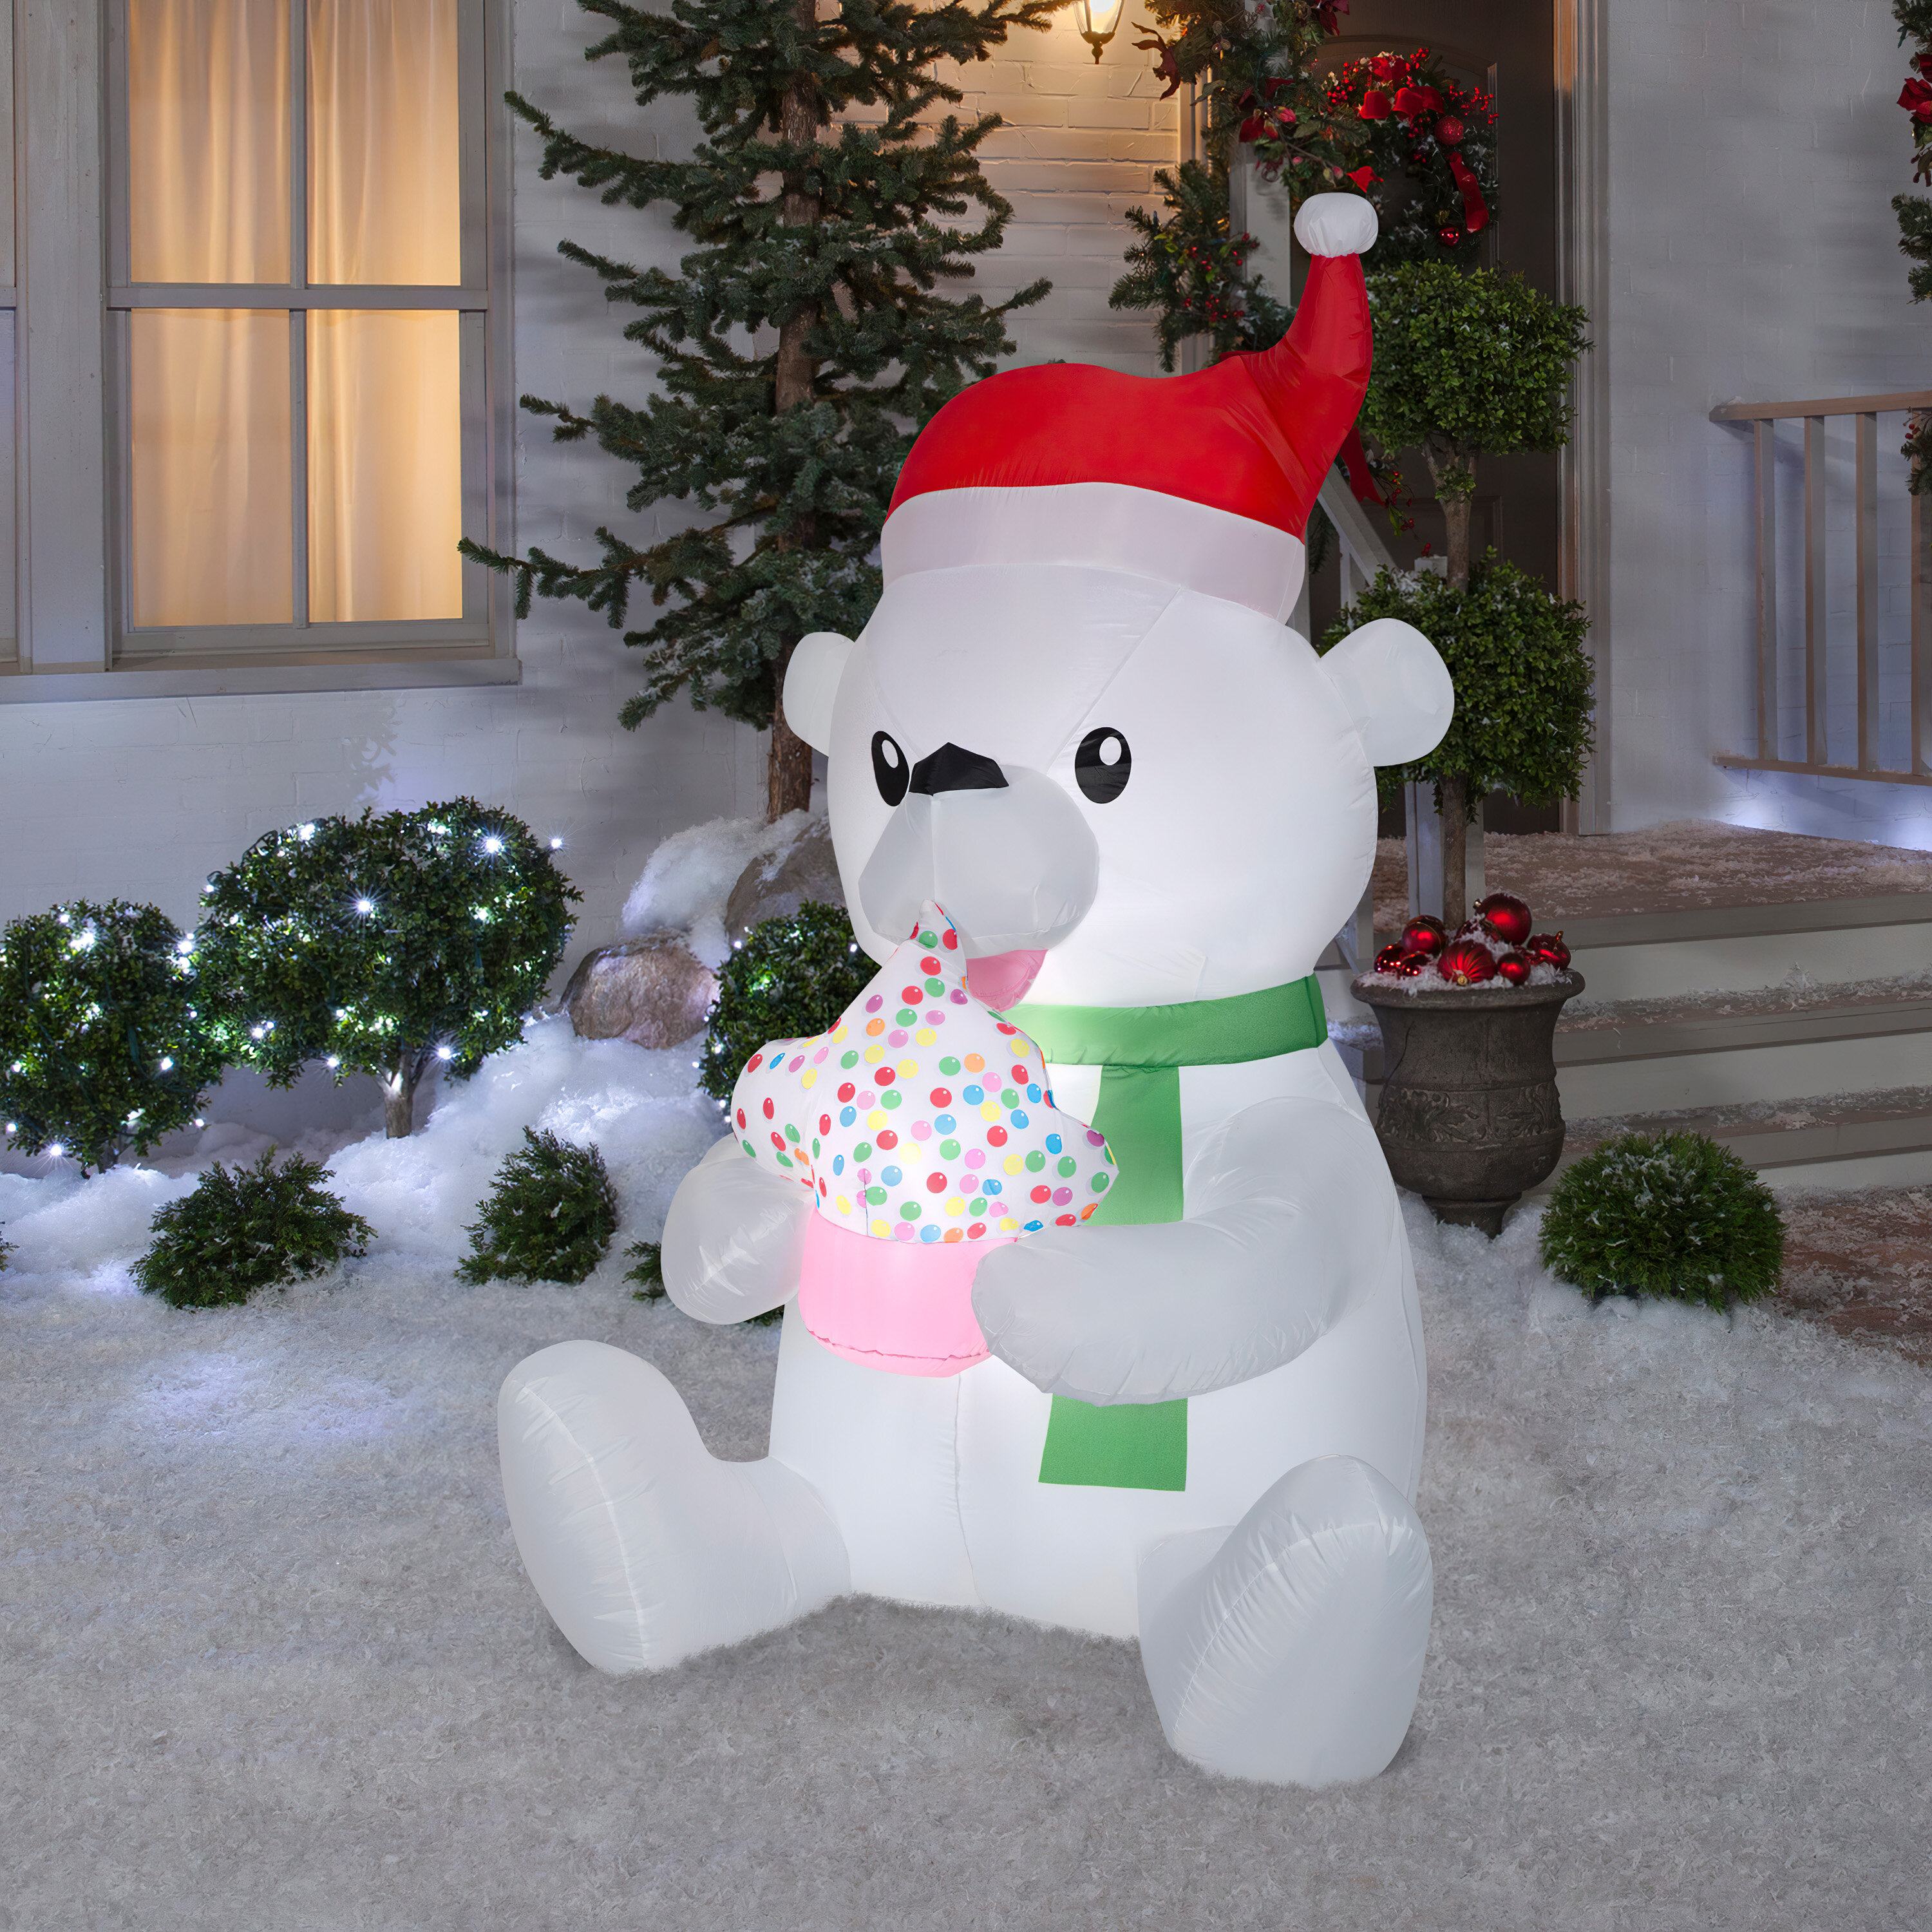 Gemmy Industries Animated Polar Bear With Cupcake & Reviews | Wayfair